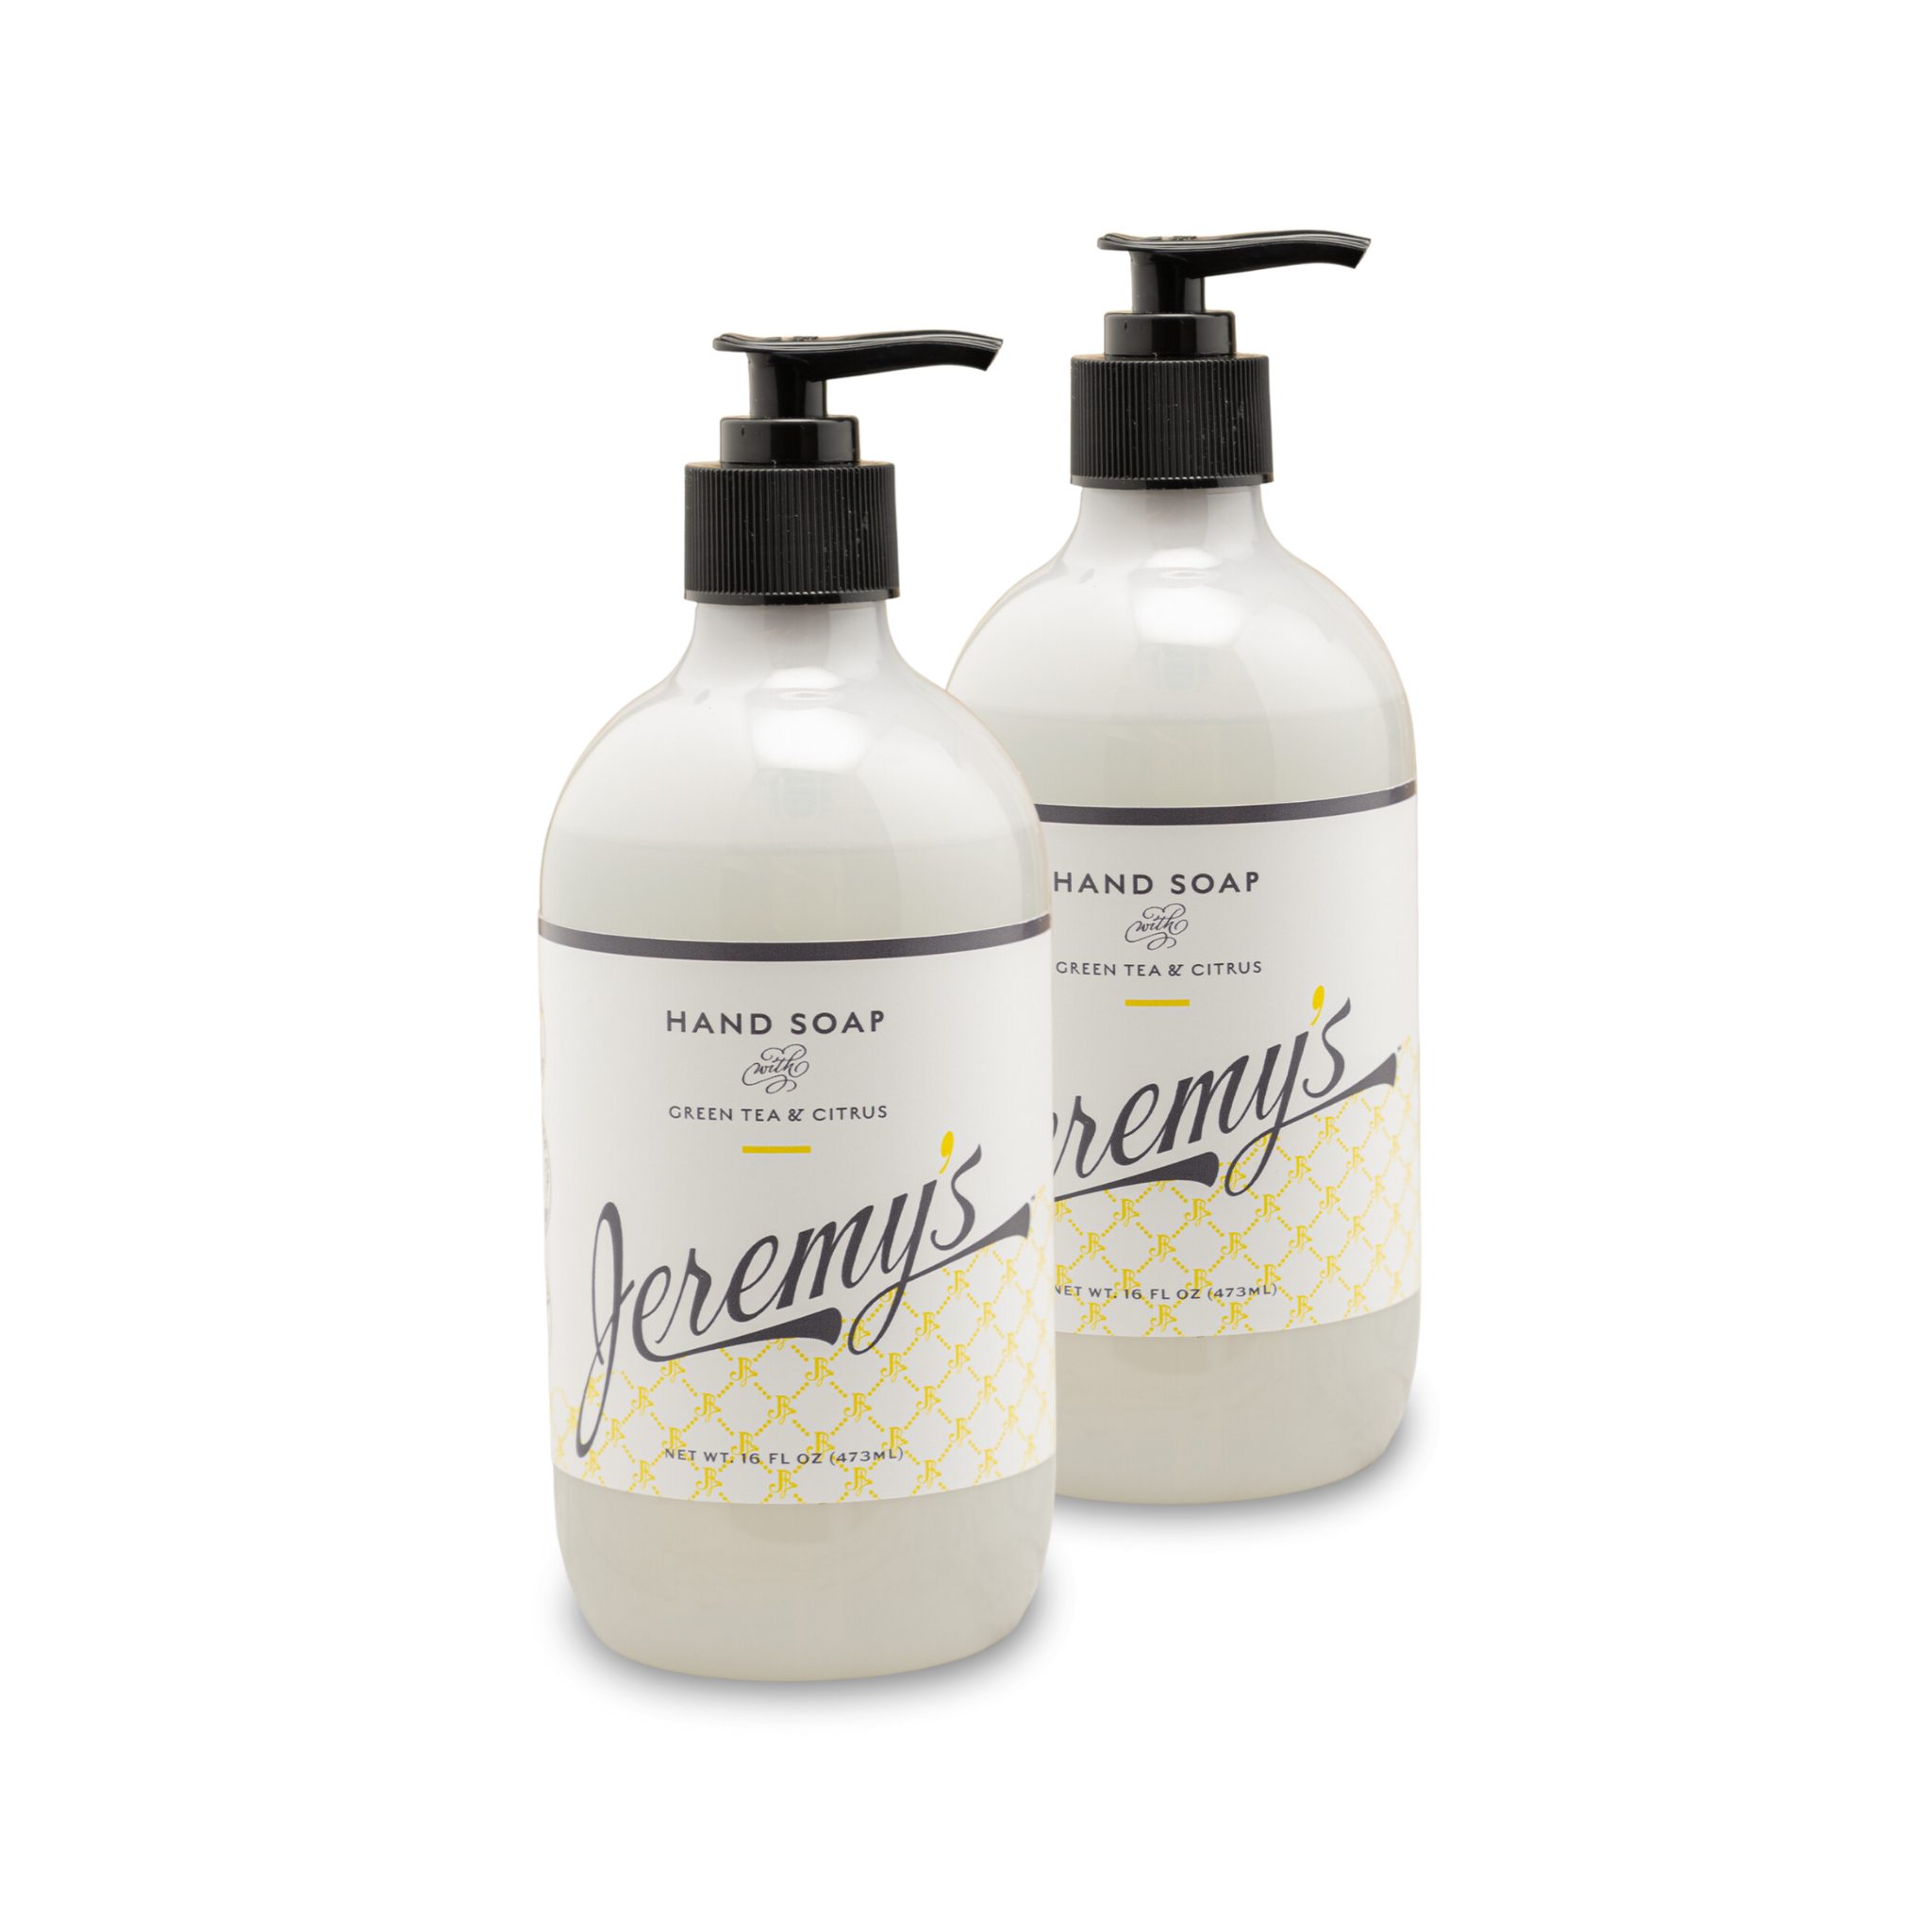 Hand Soap – Jeremy's Razors